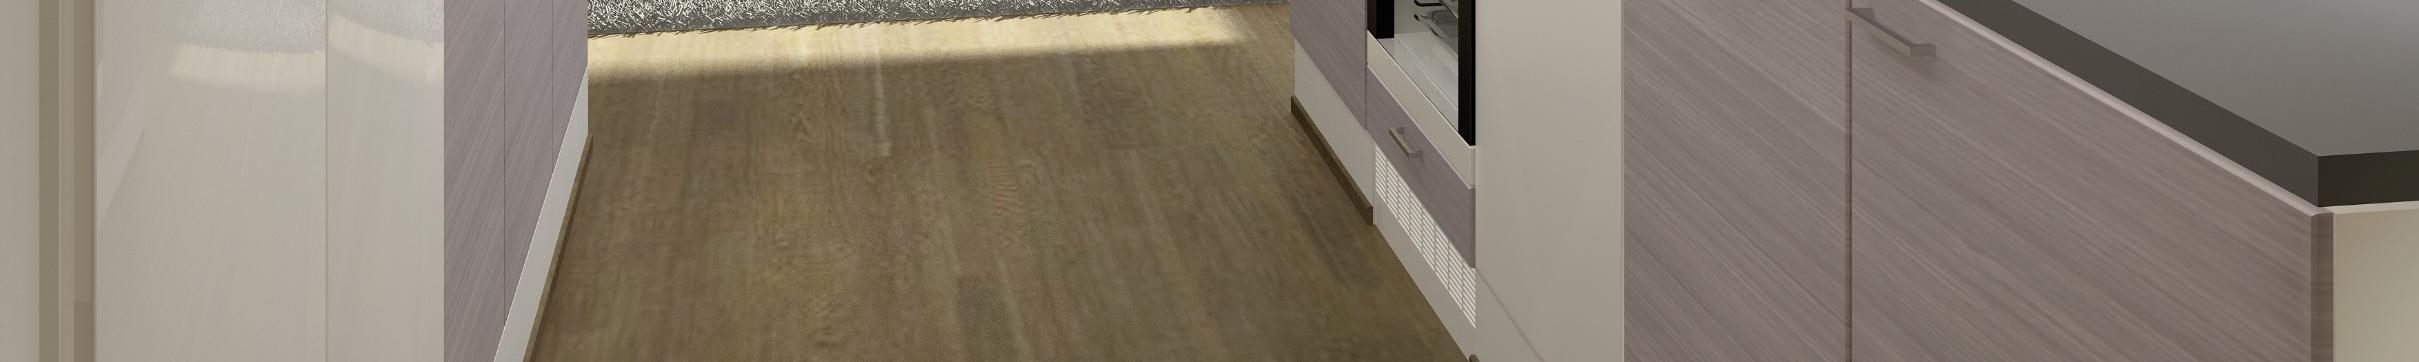 MATERIAALIKOKONAISUUS LUOTO Seinäkaapit (Novart Petra) kalusteovi: valkoinen matta, maalattu mdf-ovi Milka 961 Pöytäkaapit ja komerot (Novart Petra) kalusteovi: harmaa puu, mikrolaminaatti Helka 162